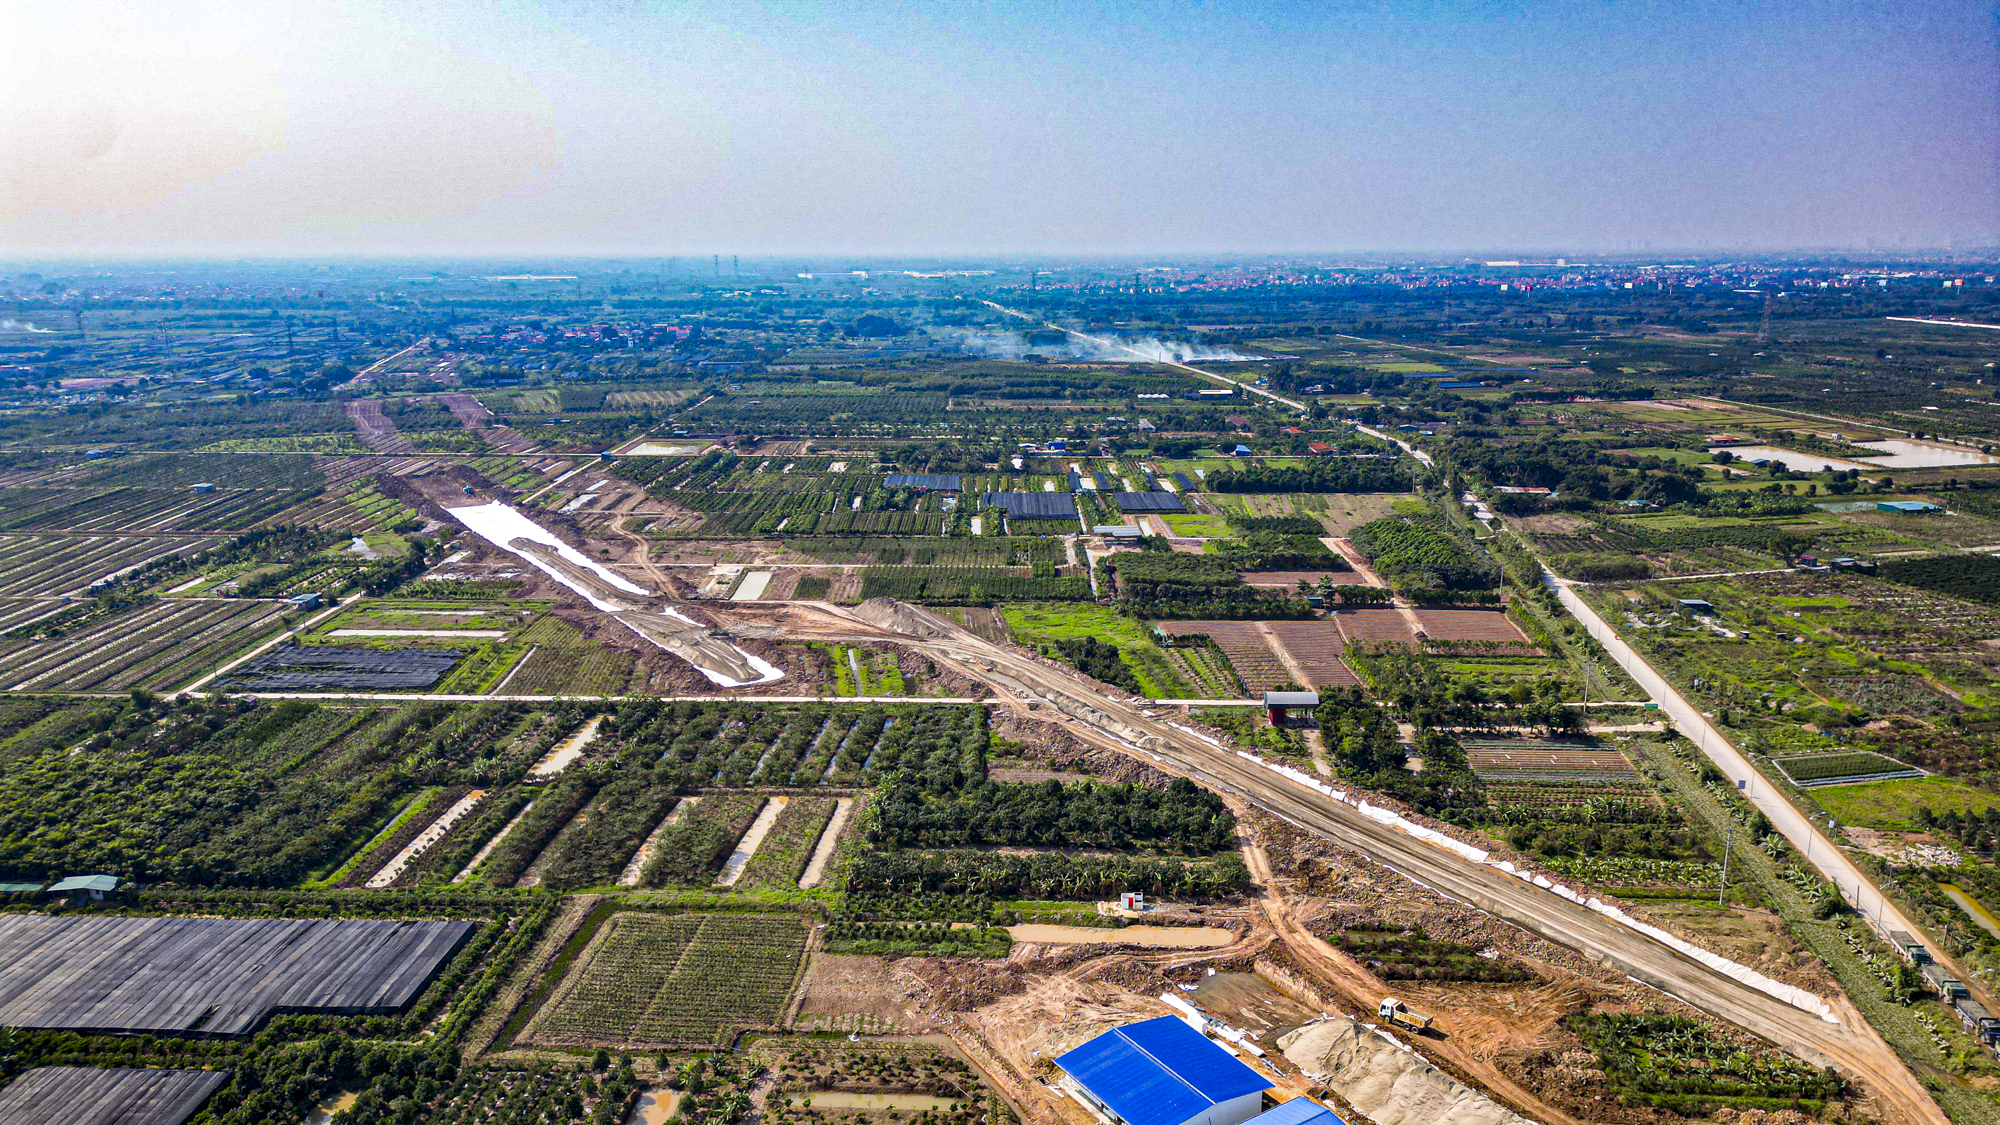 Khu vực sẽ làm đường cao tốc giáp Hà Nội, kết nối với cây cầu mới vượt sông Hồng- Ảnh 11.